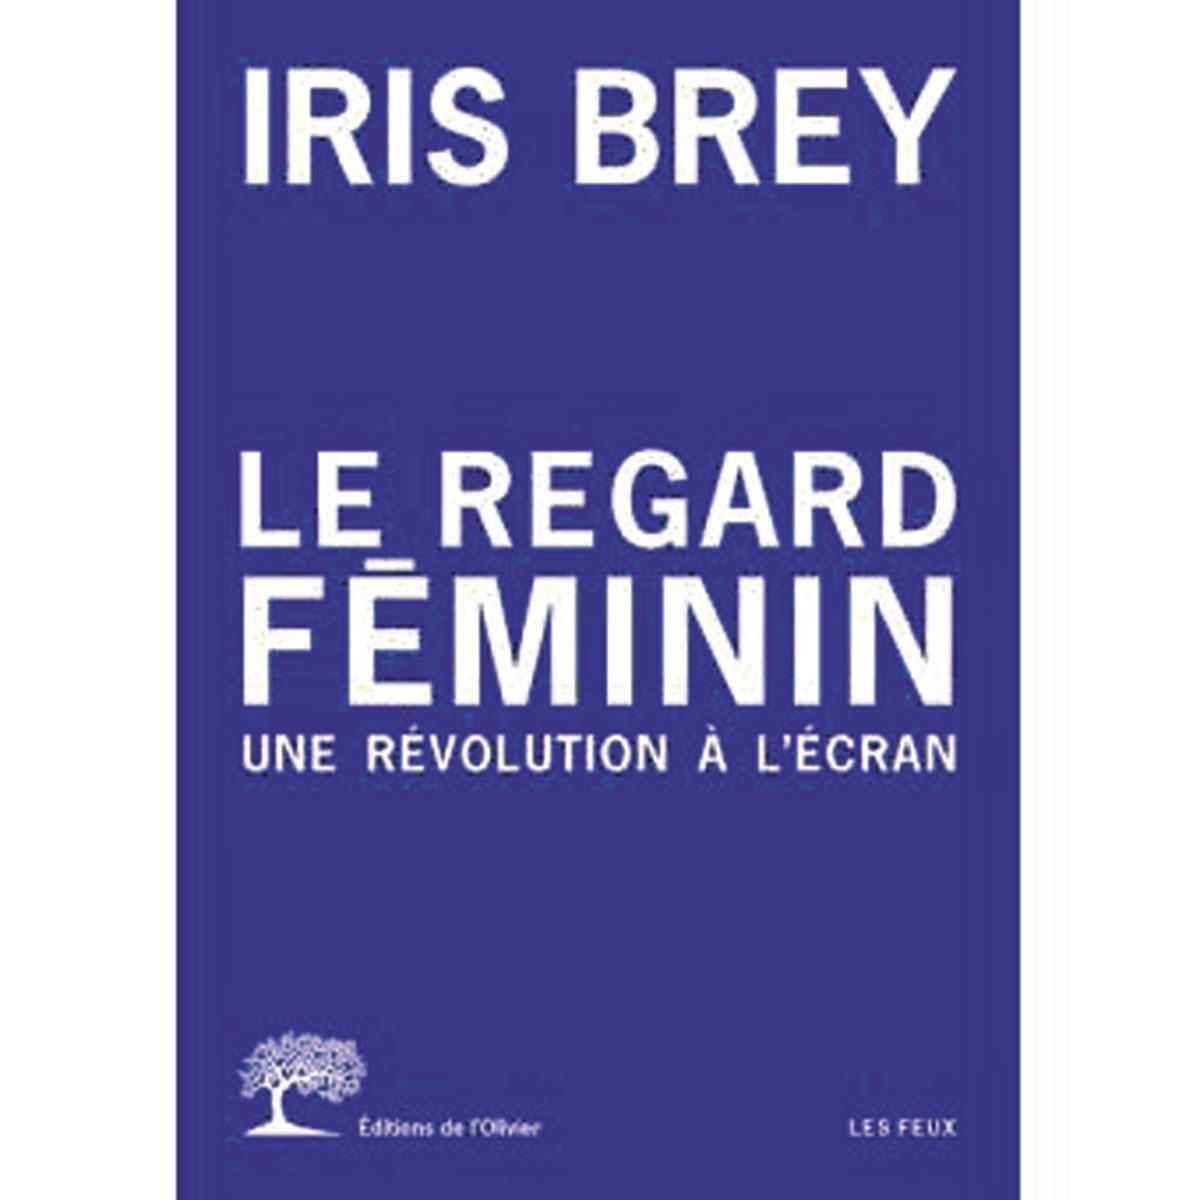 Le Regard féminin. Une révolution à l'écran, par Iris Brey, Editions de l'Olivier, 252 p.